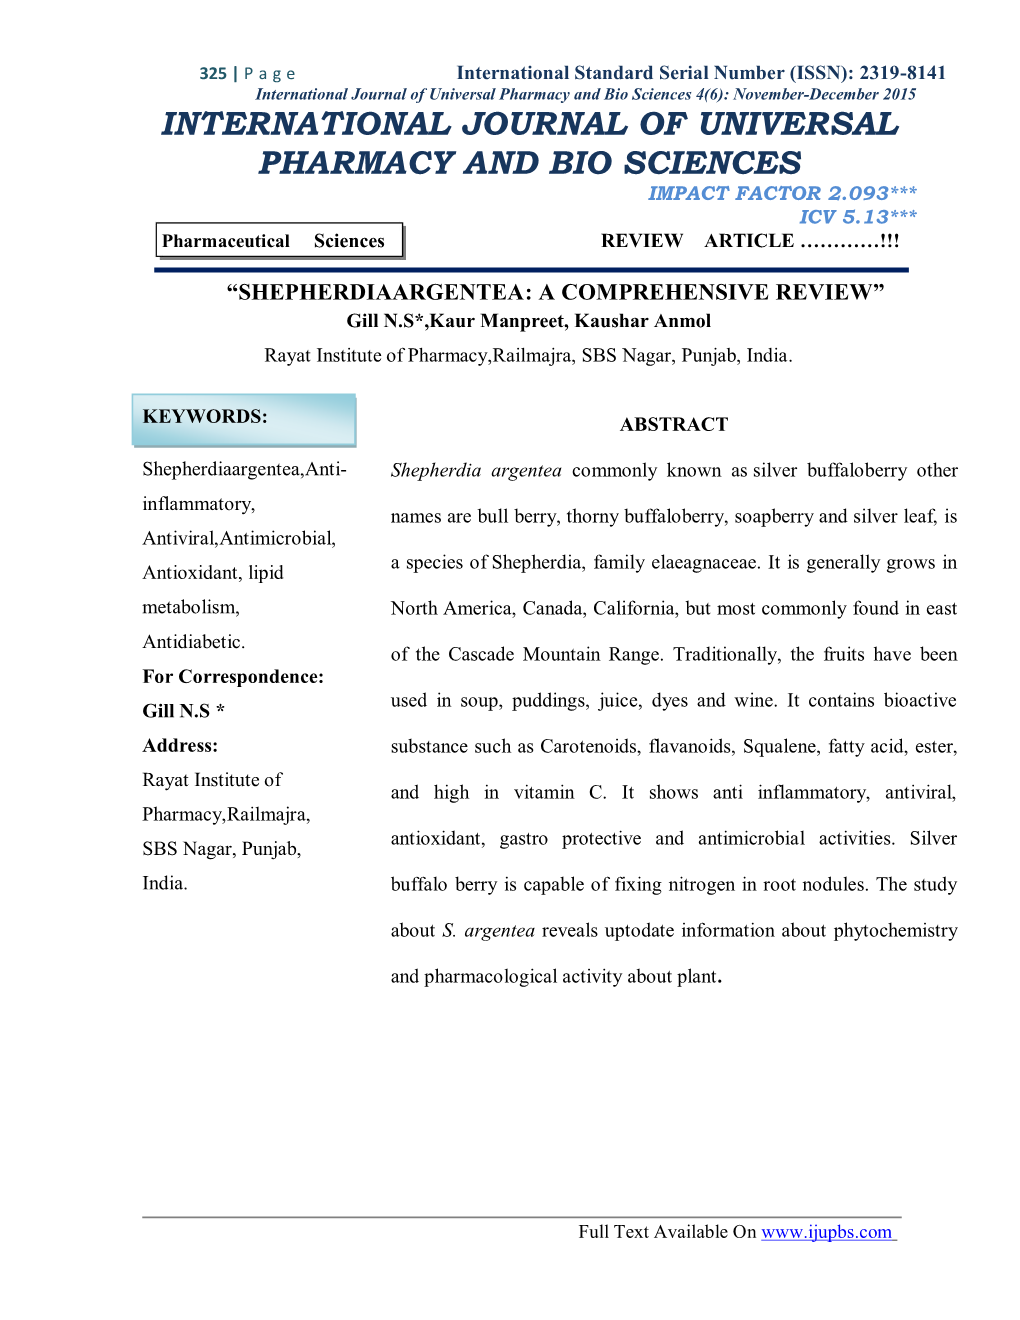 International Journal of Universal Pharmacy and Bio